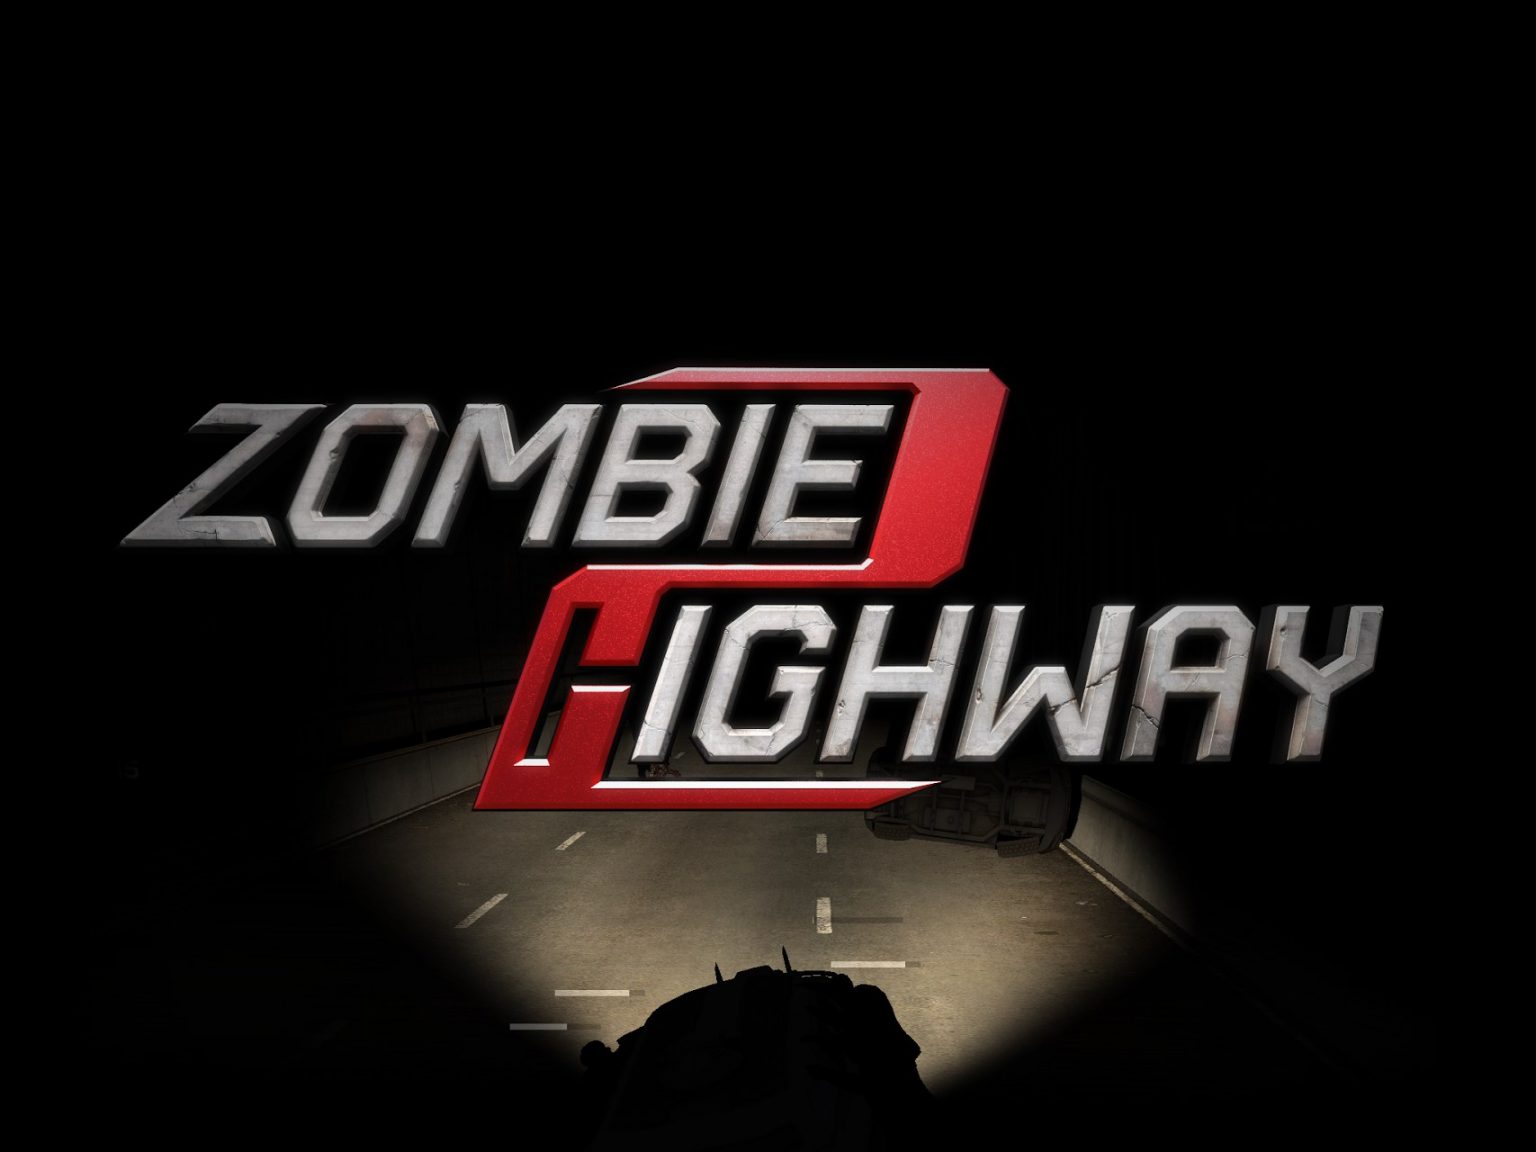 Zombie Highway